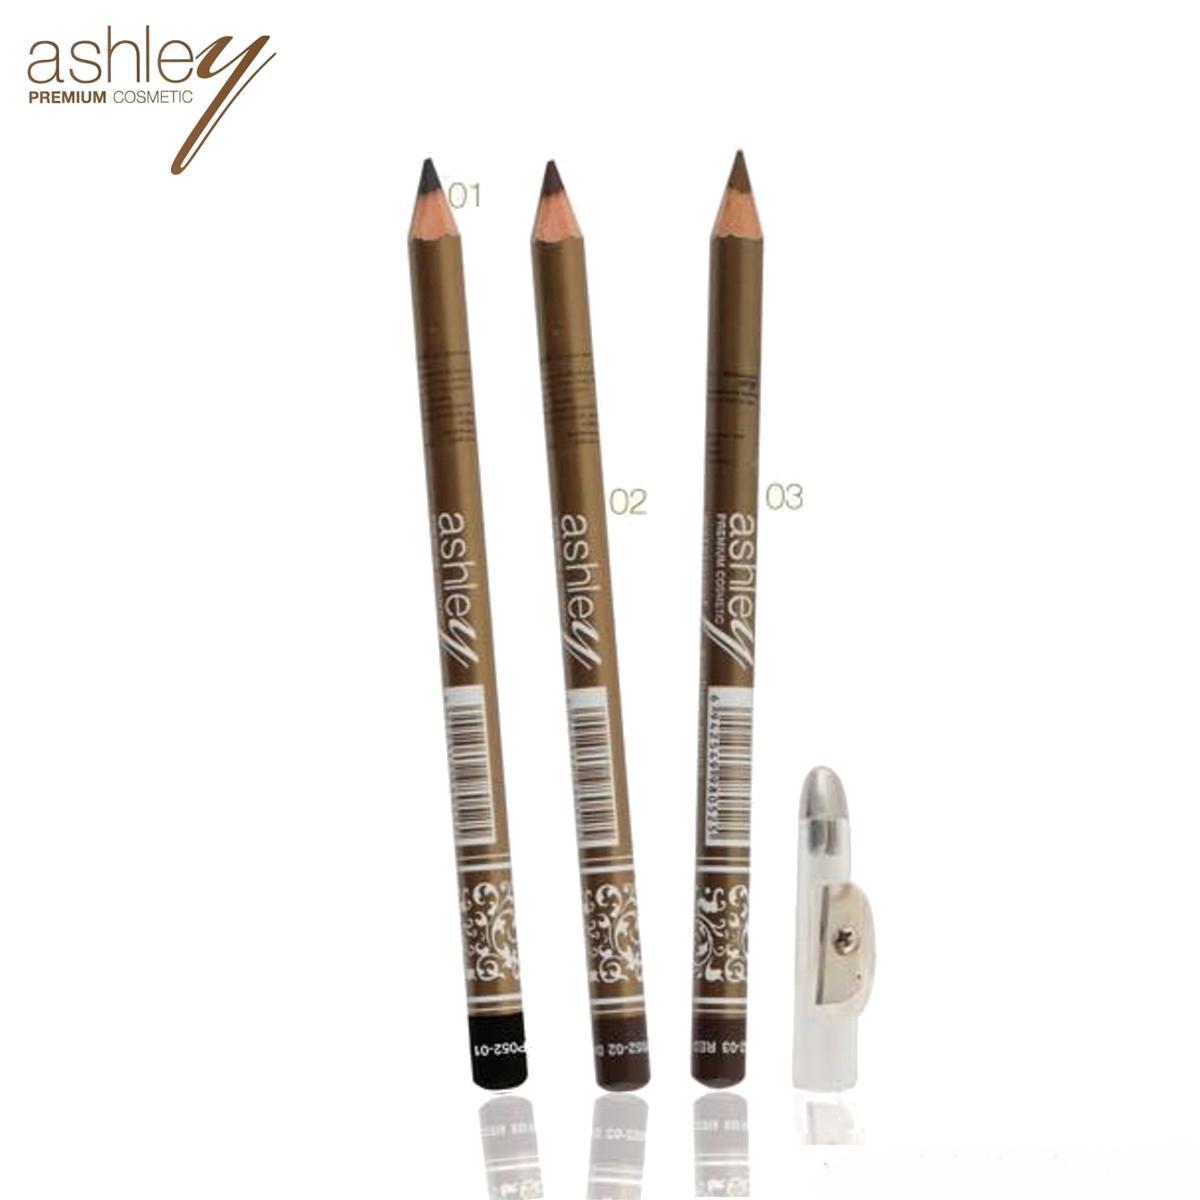 (12แท่ง/ยกแพค) AP-052 ดินสอเขียนคิ้วแบบ !!!(มีกบเหลา)!!! Ashley Premium Eyebrow Pencil Waterproof